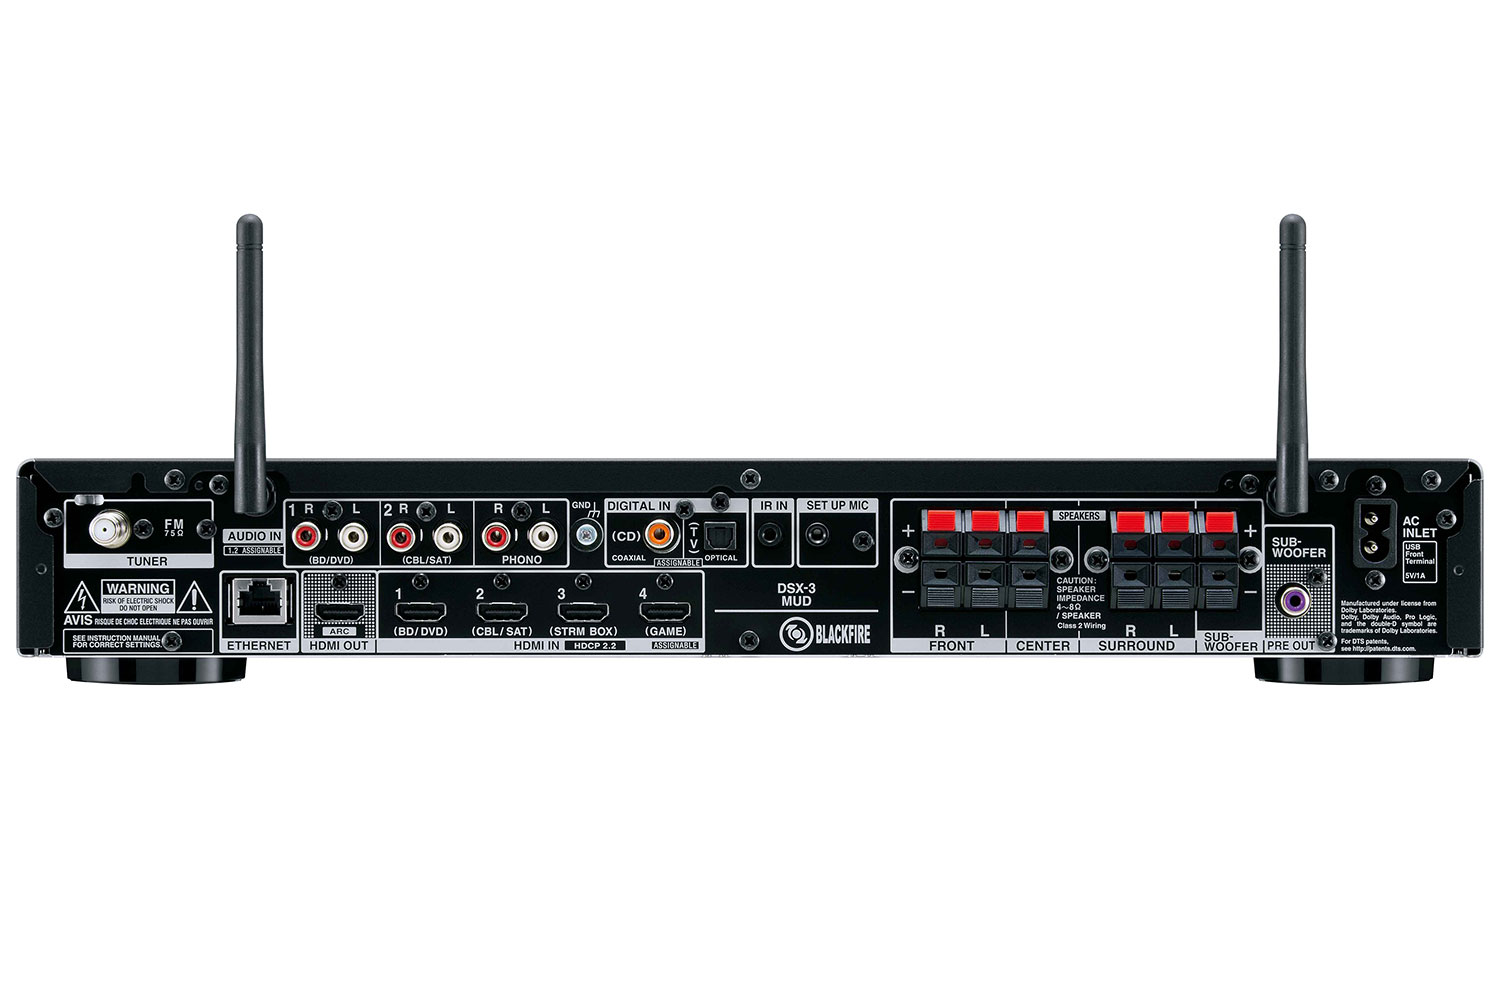 integra dlb 5 sound bar system dsx 3 network av receiver